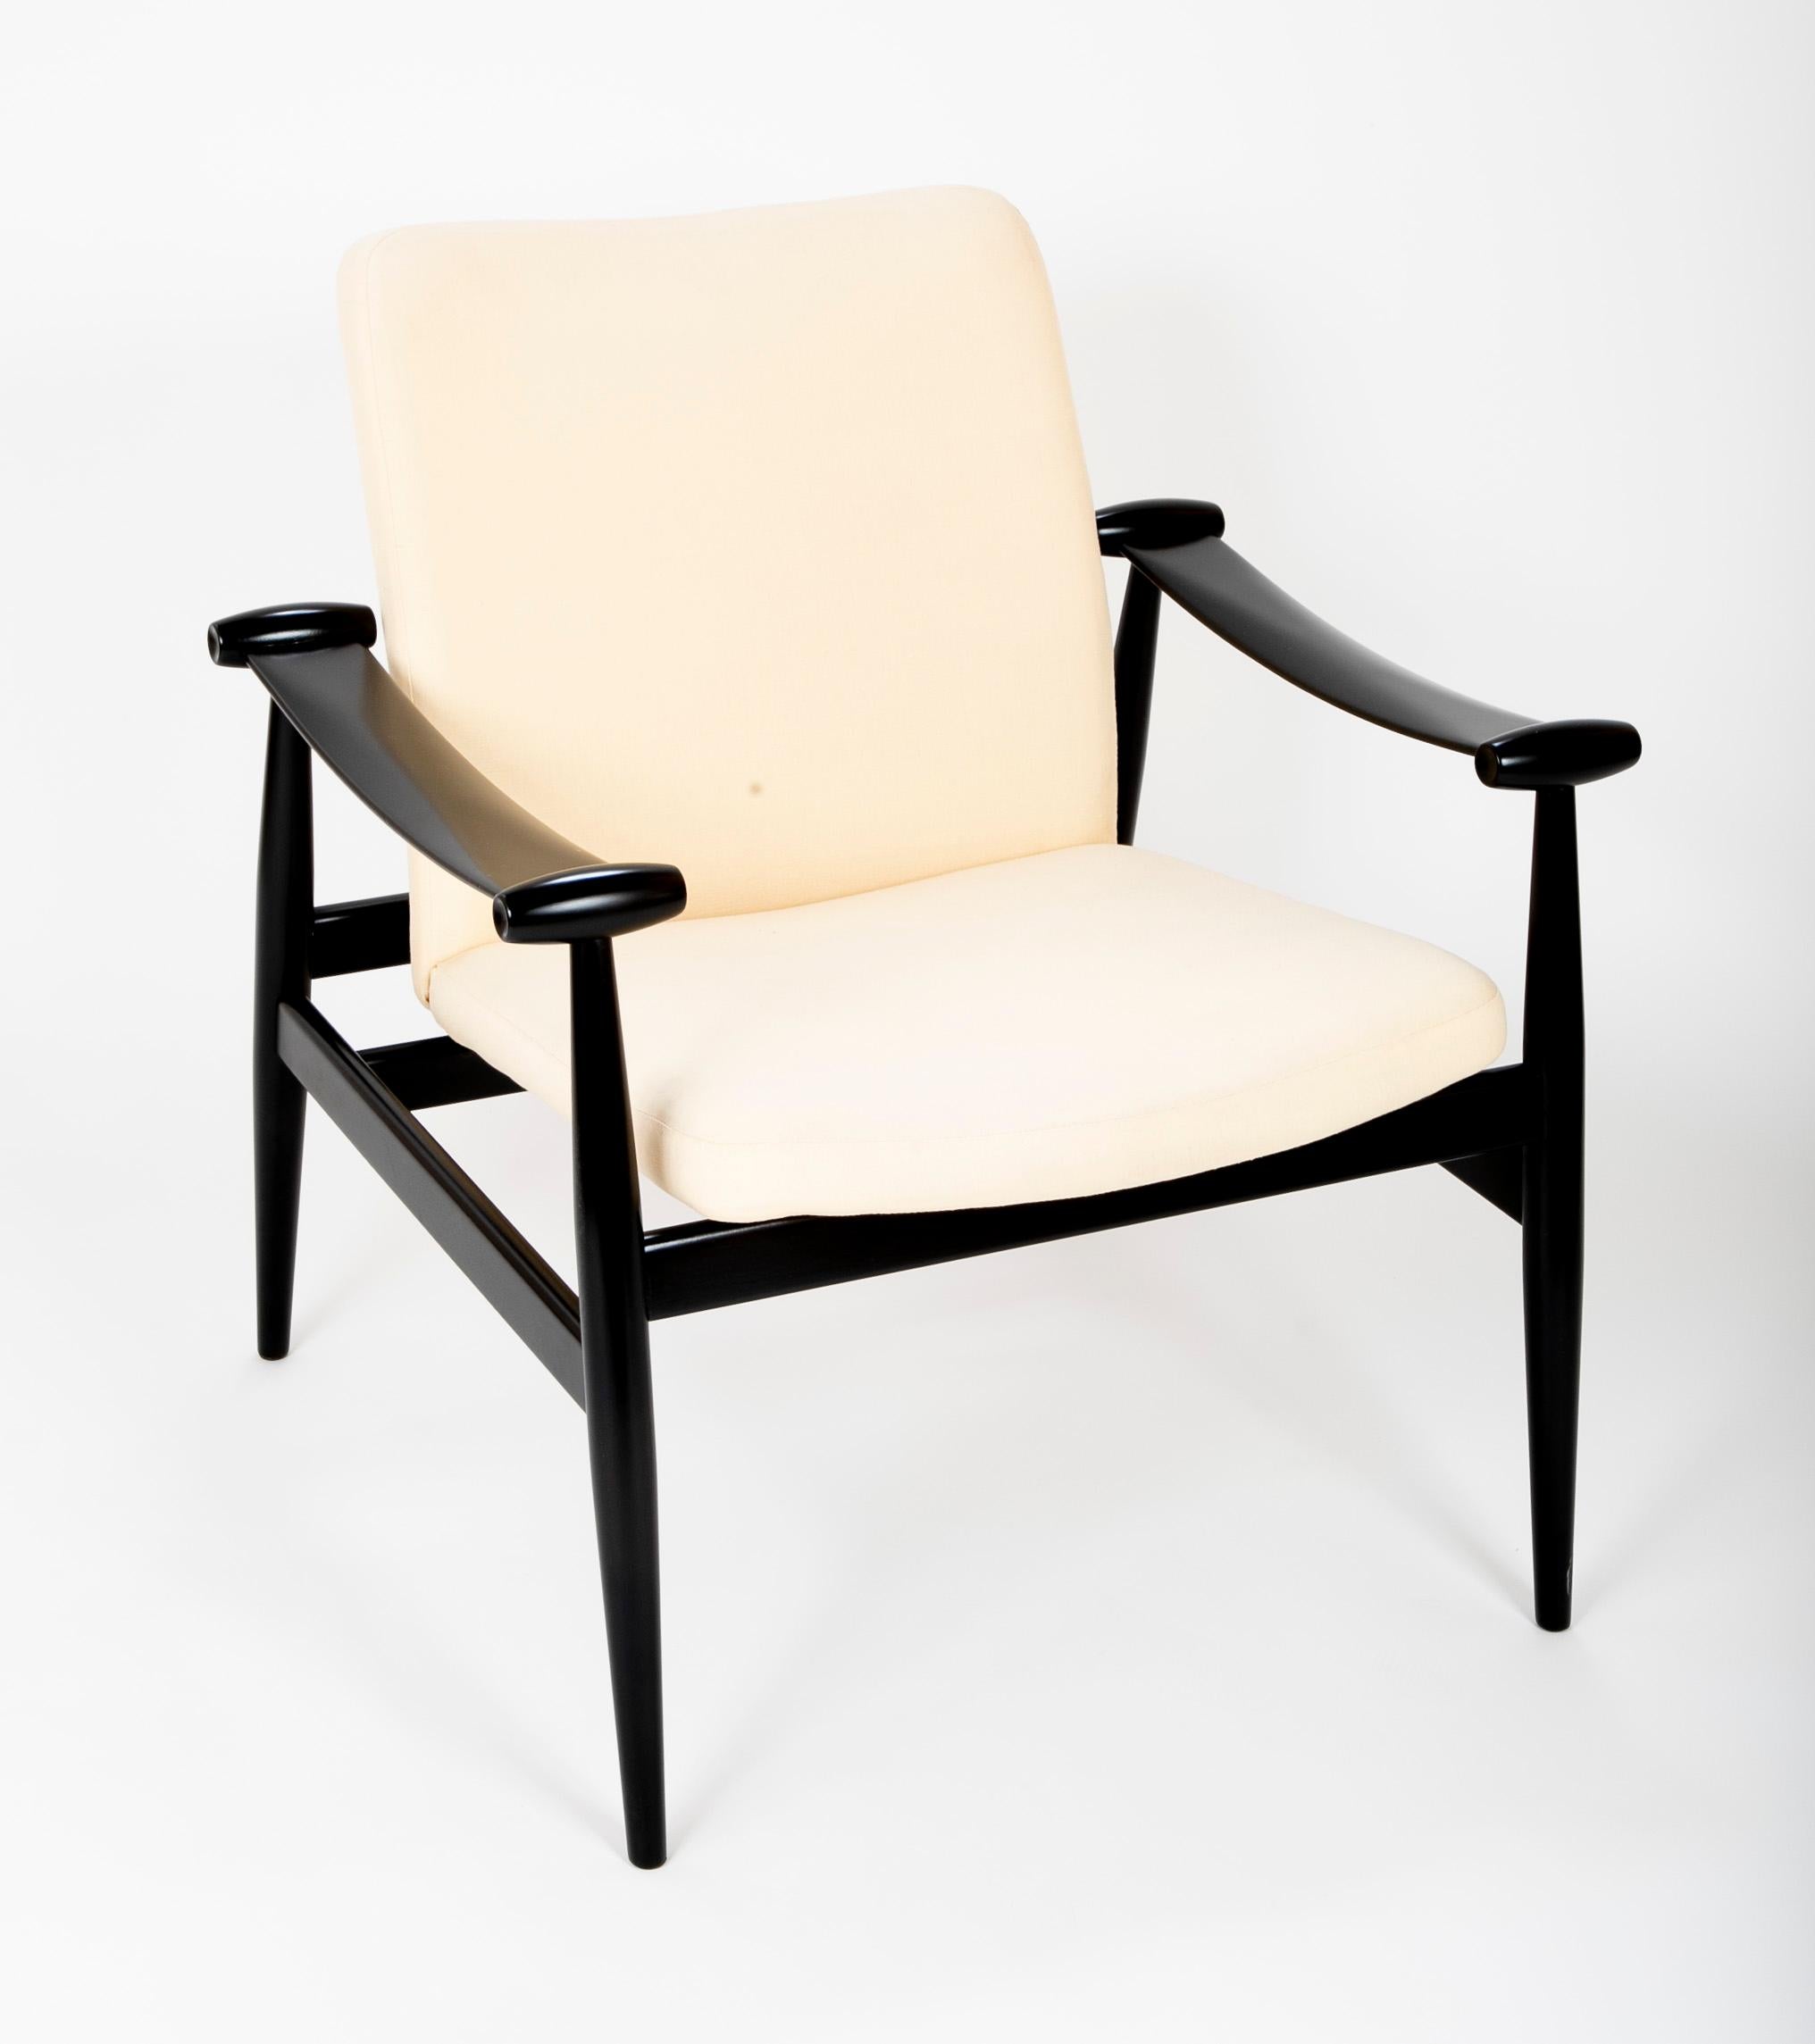 Une chaise France and Sons conçue par Finn Juhl. Connu sous le nom de 